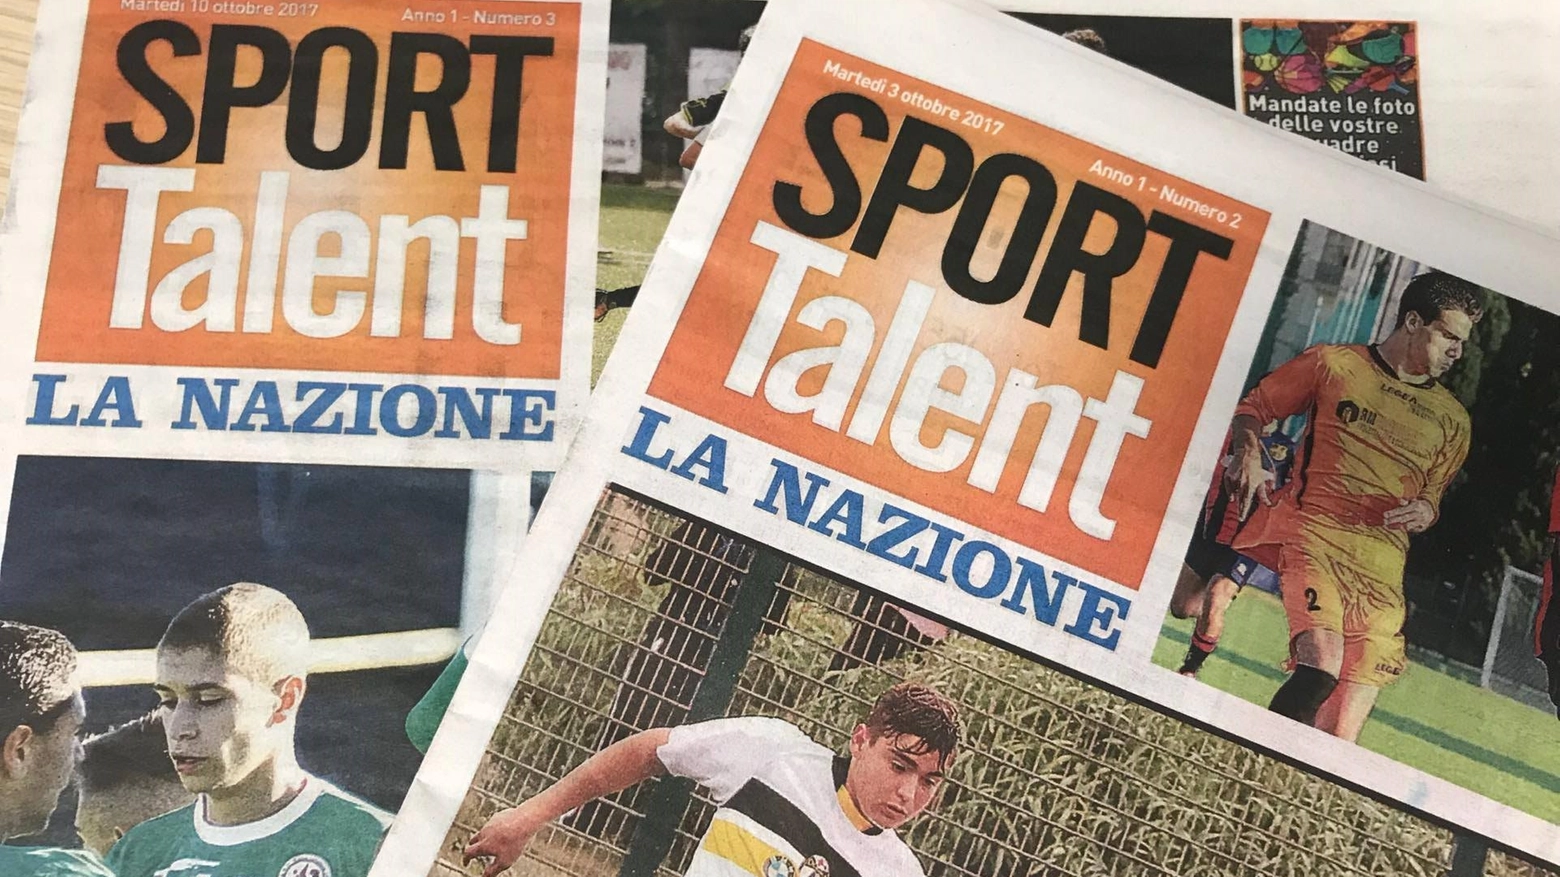 Sport Talent